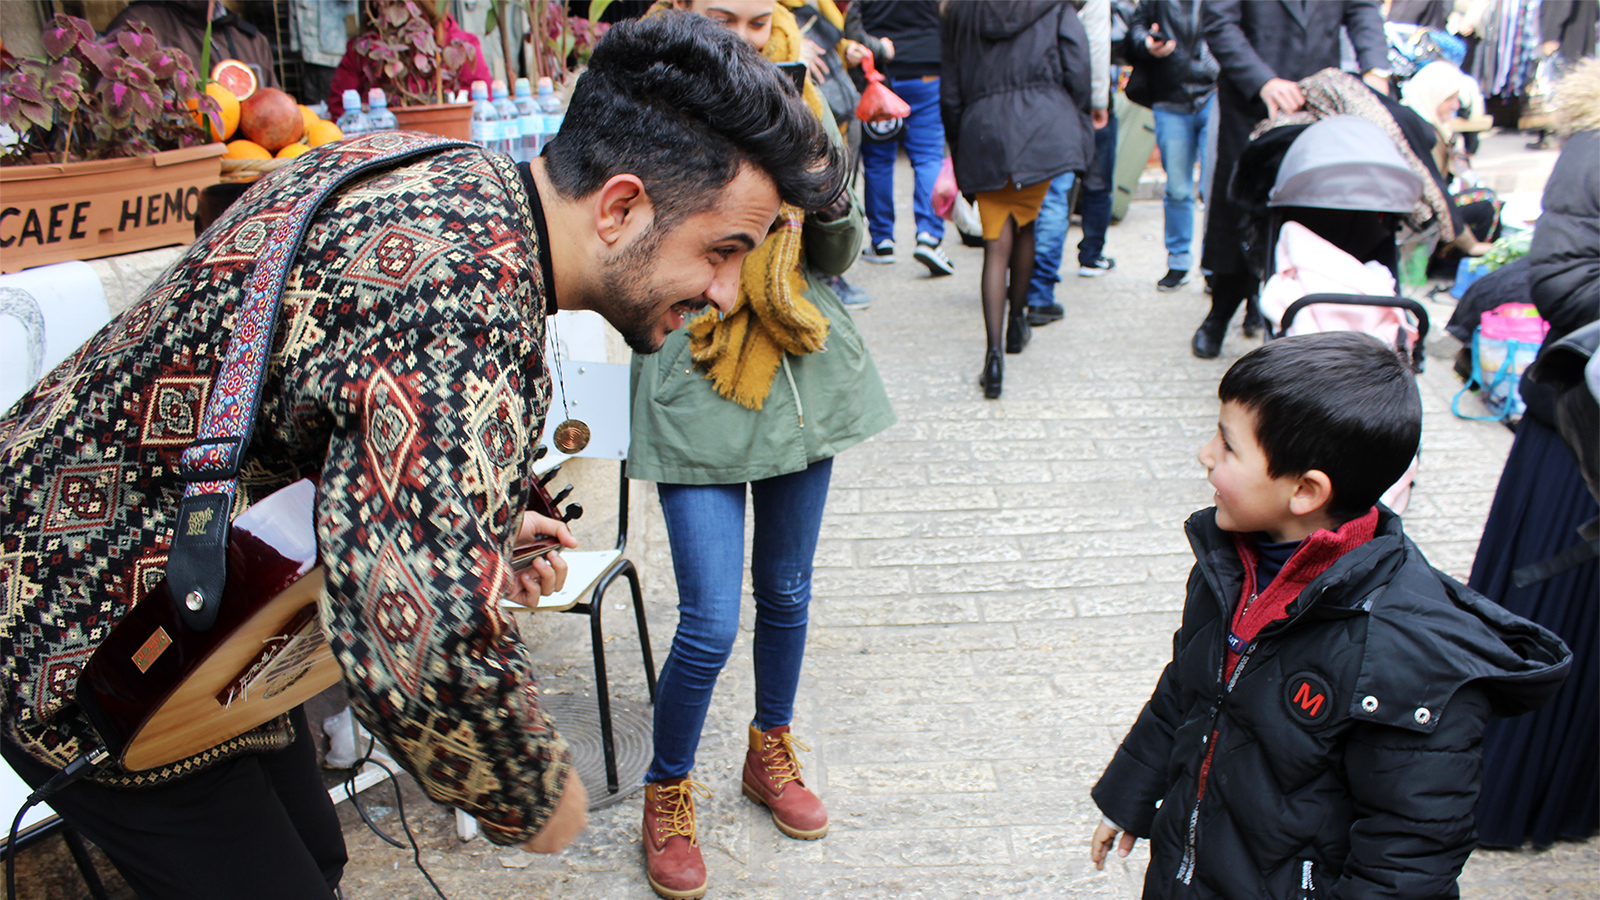 كنعان الغول أثناء تفاعله مع أحد الأطفال في العرض الموسيقي داخل أسوار القدس (الجزيرة)